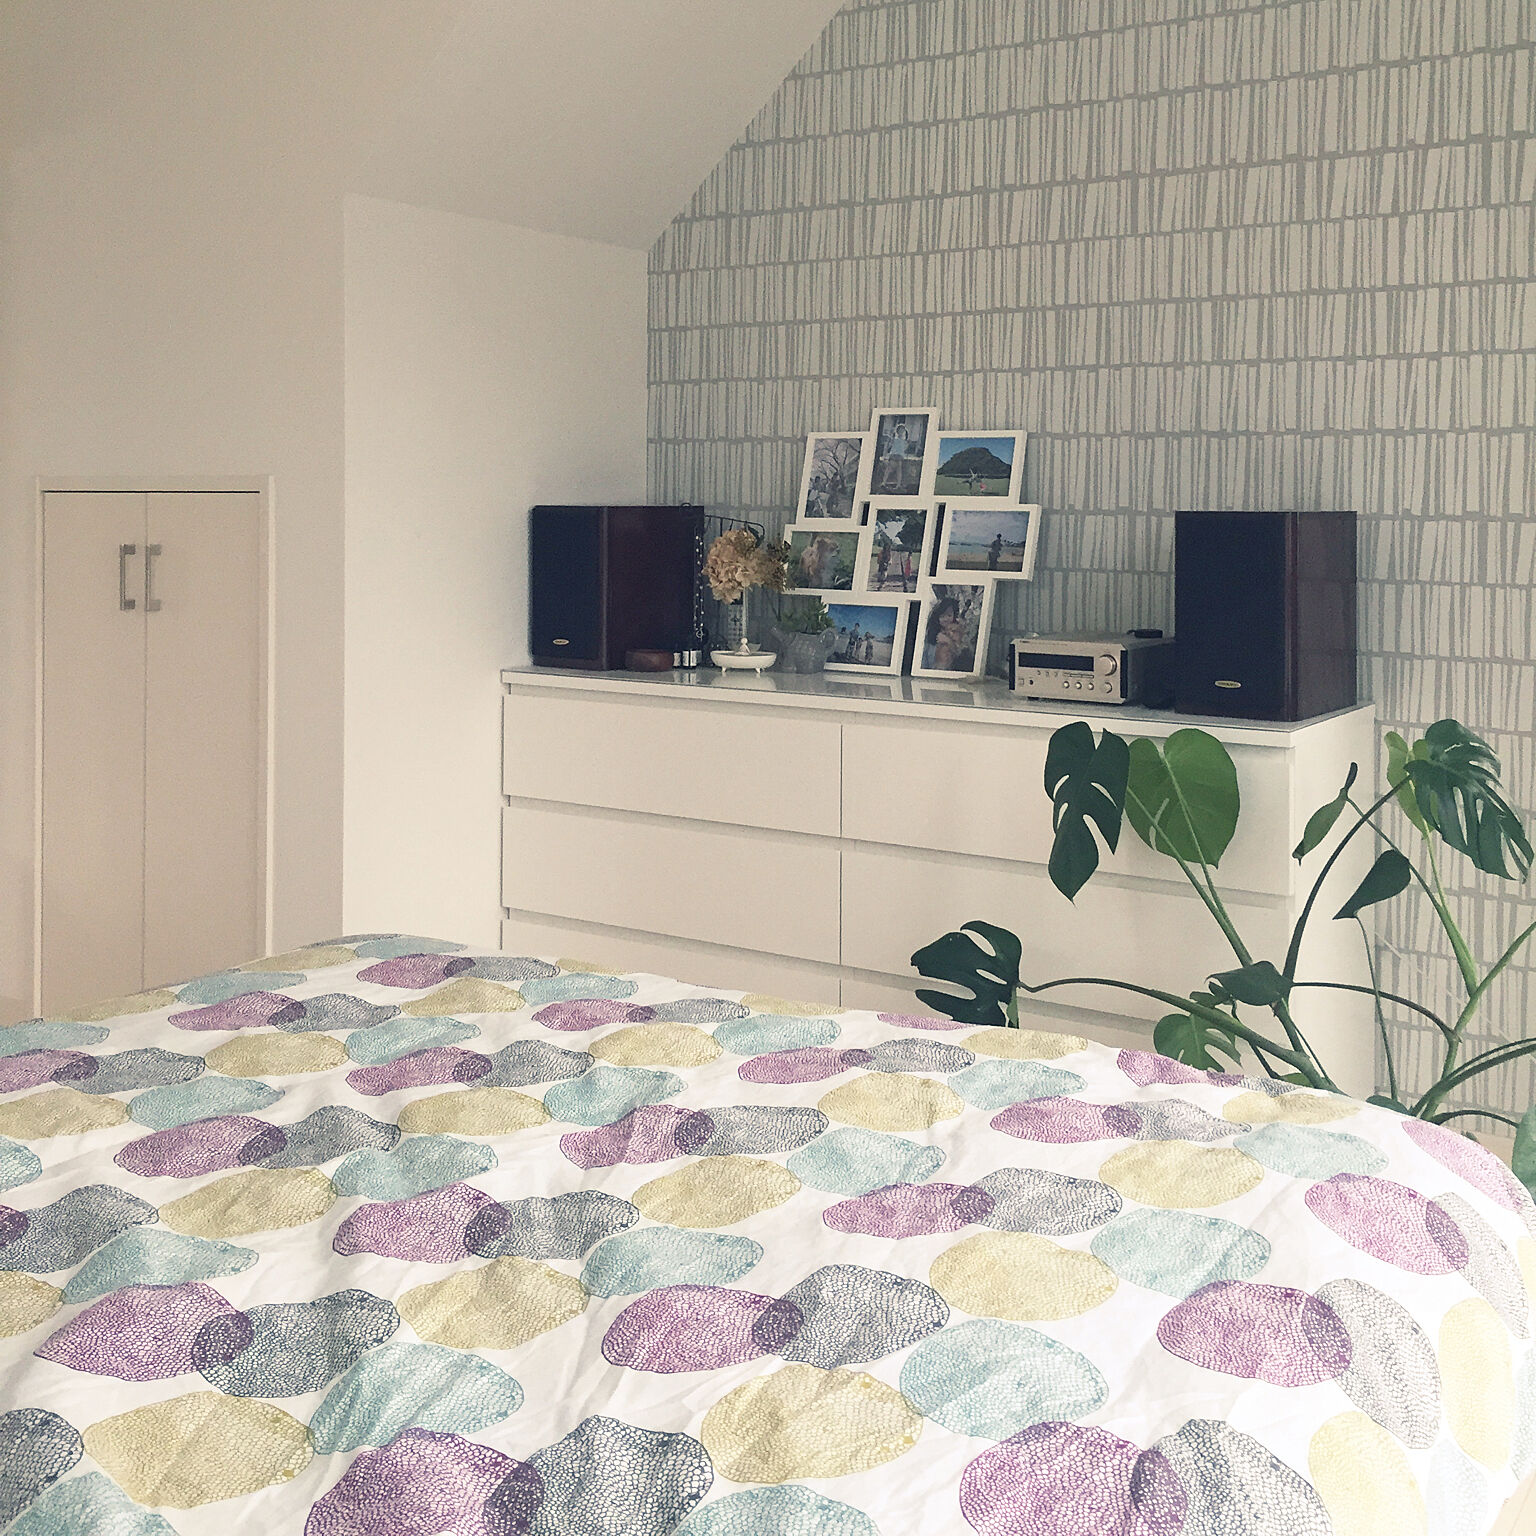 くつろぎの寝室で質の良い睡眠を。憧れの北欧スタイル | RoomClip mag